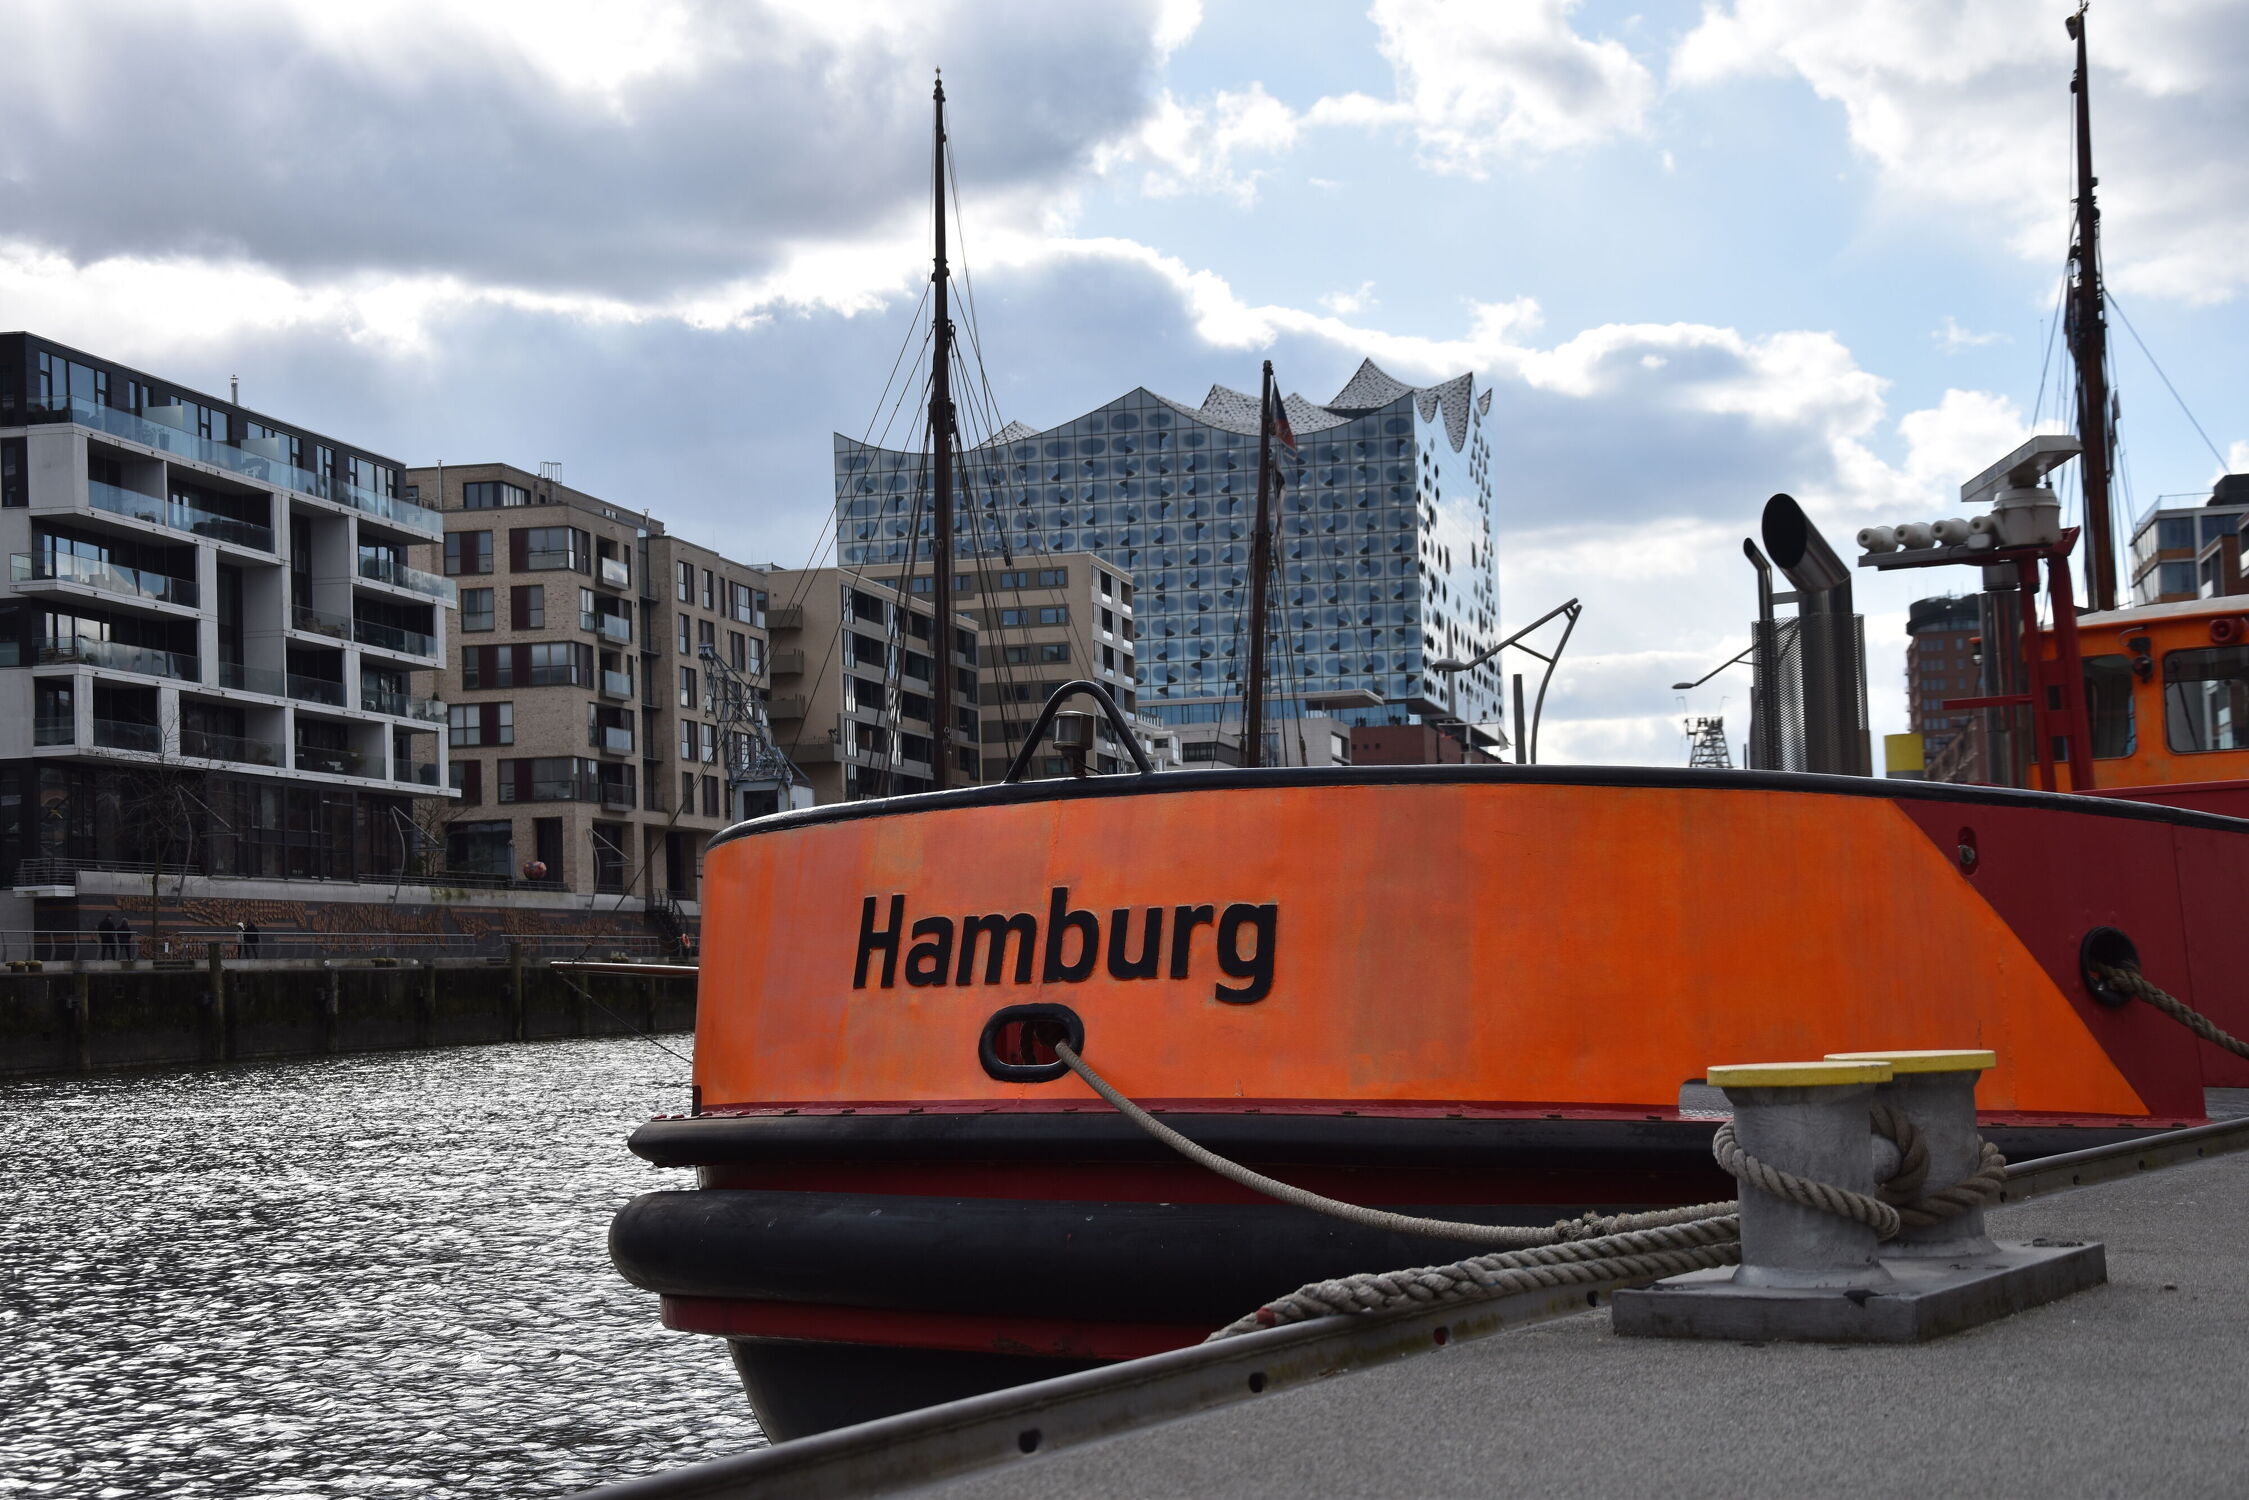 Bild mit Architektur, Staedte und Architektur, Elbe, Hamburg, Elbphilharmonie, hafencity, Feuwerwehrschiff, Traditionsschiffhafen, Sandtorhafen